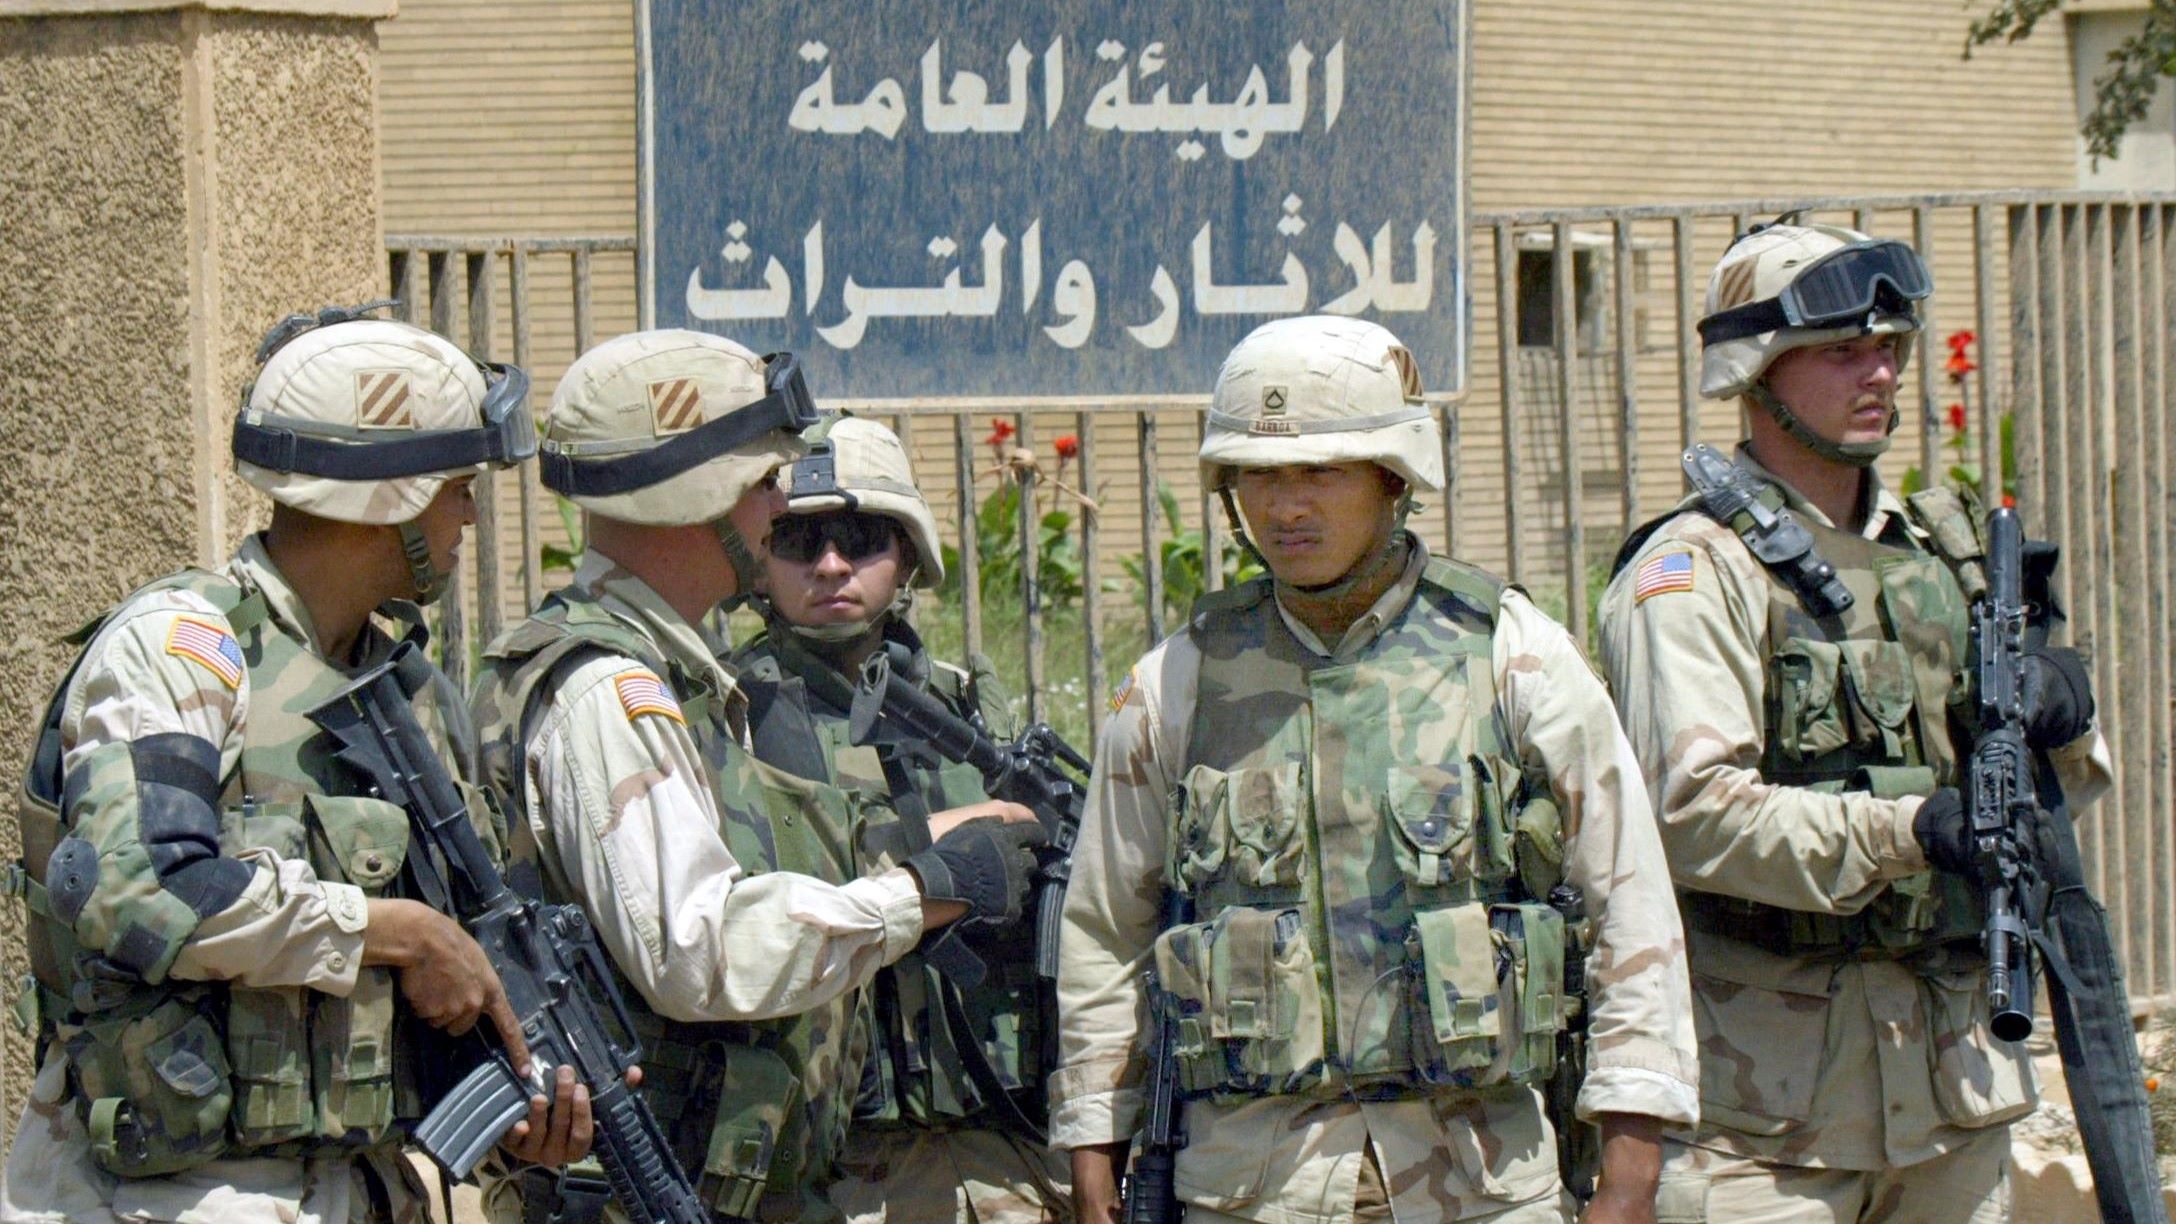 us-soldiers-iraq-museum-april-2003-karimsahib-afp